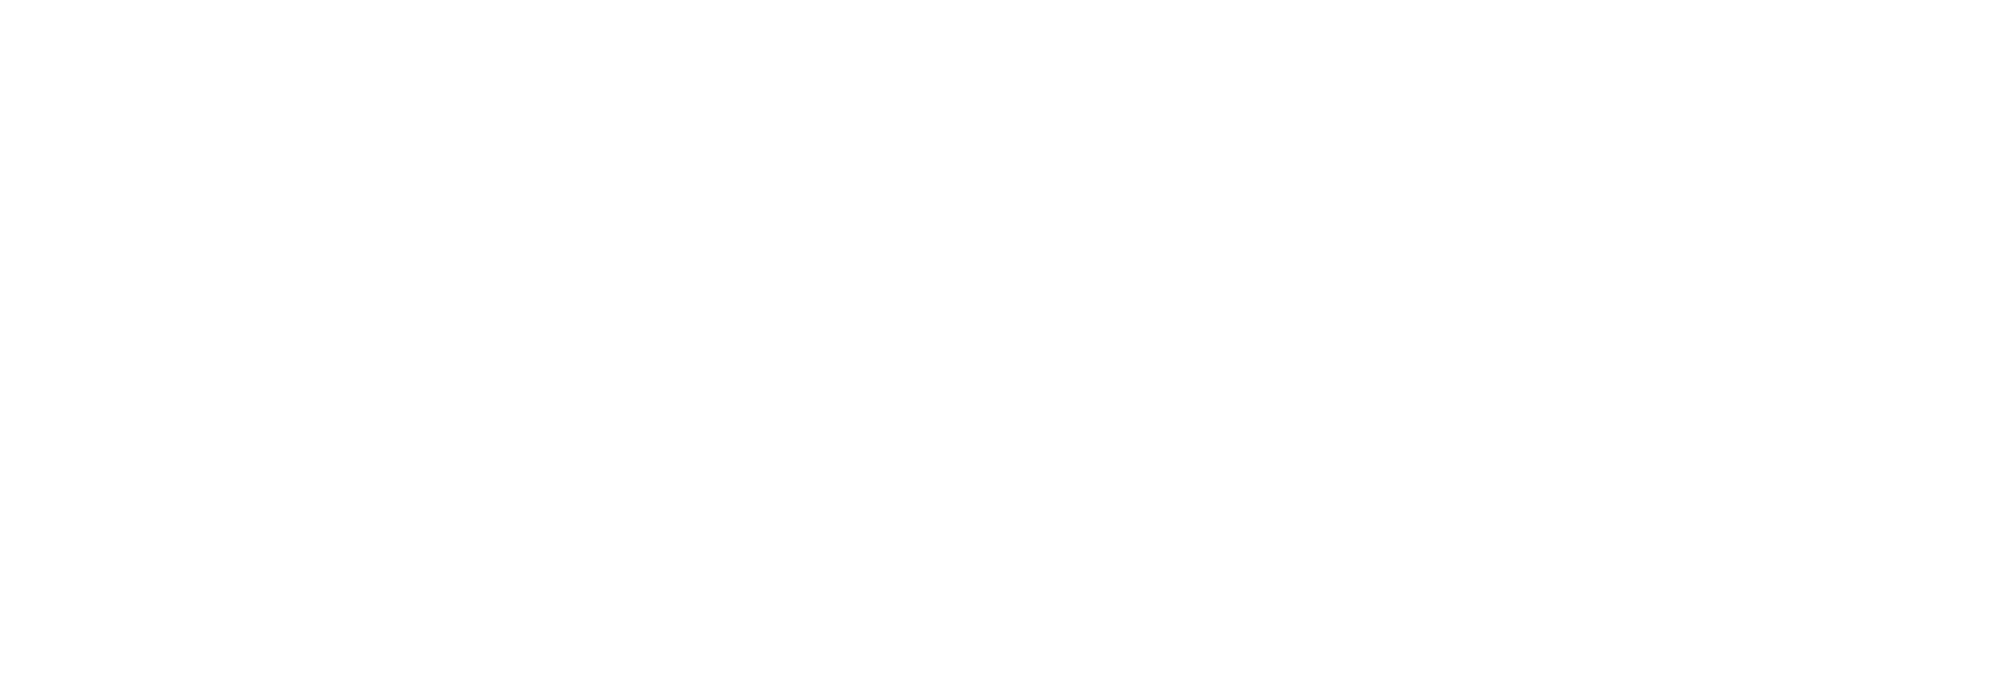 Code nebula